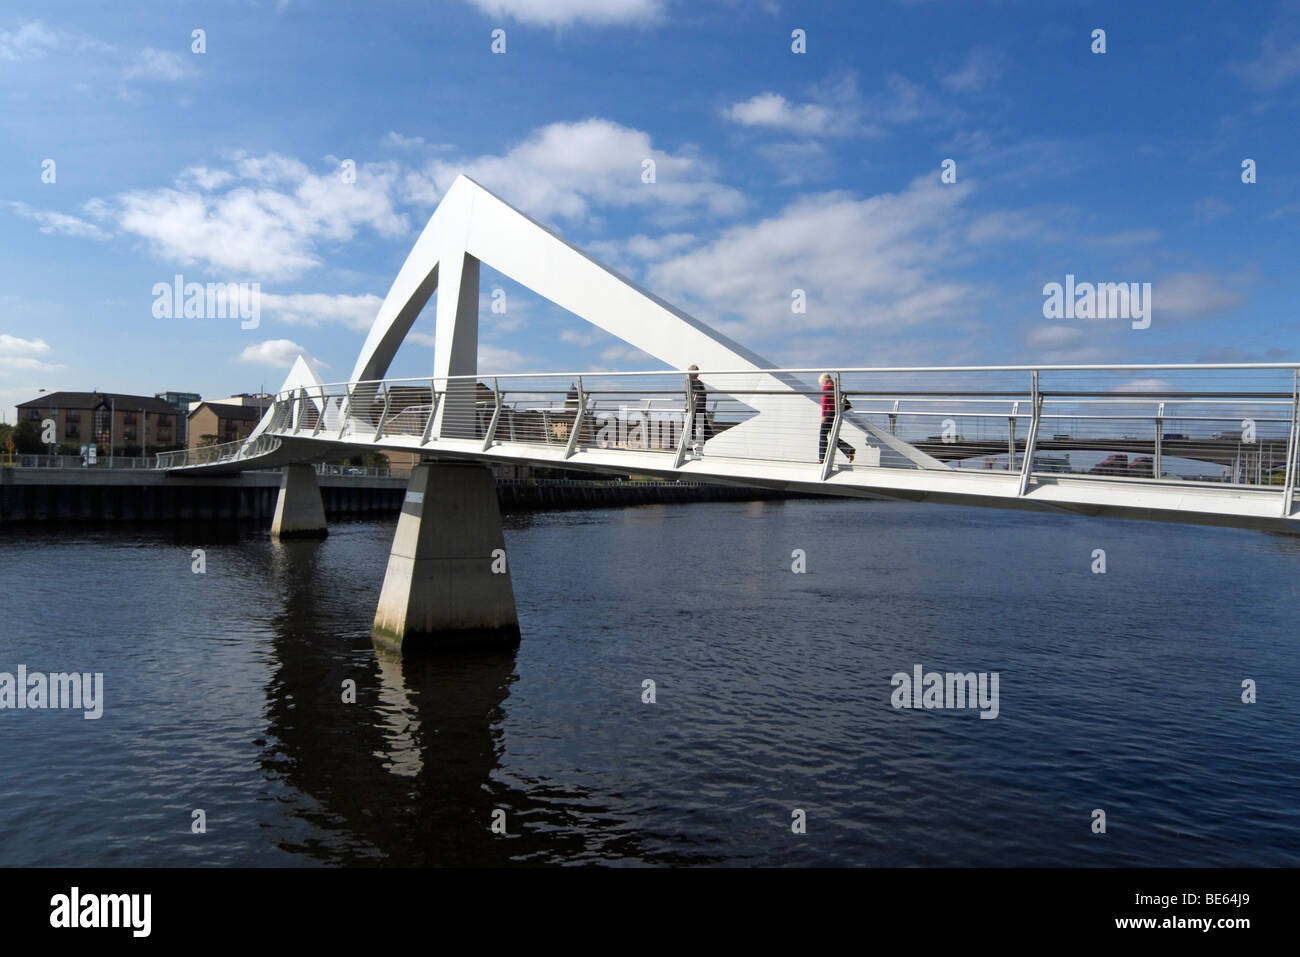 La nouvelle passerelle pour piétons de l'autre côté de la rivière Clyde à Glasgow en Écosse a ouvert ses portes en 2009, est aussi affectueusement baptisé 'Squiggly Bridge' Banque D'Images